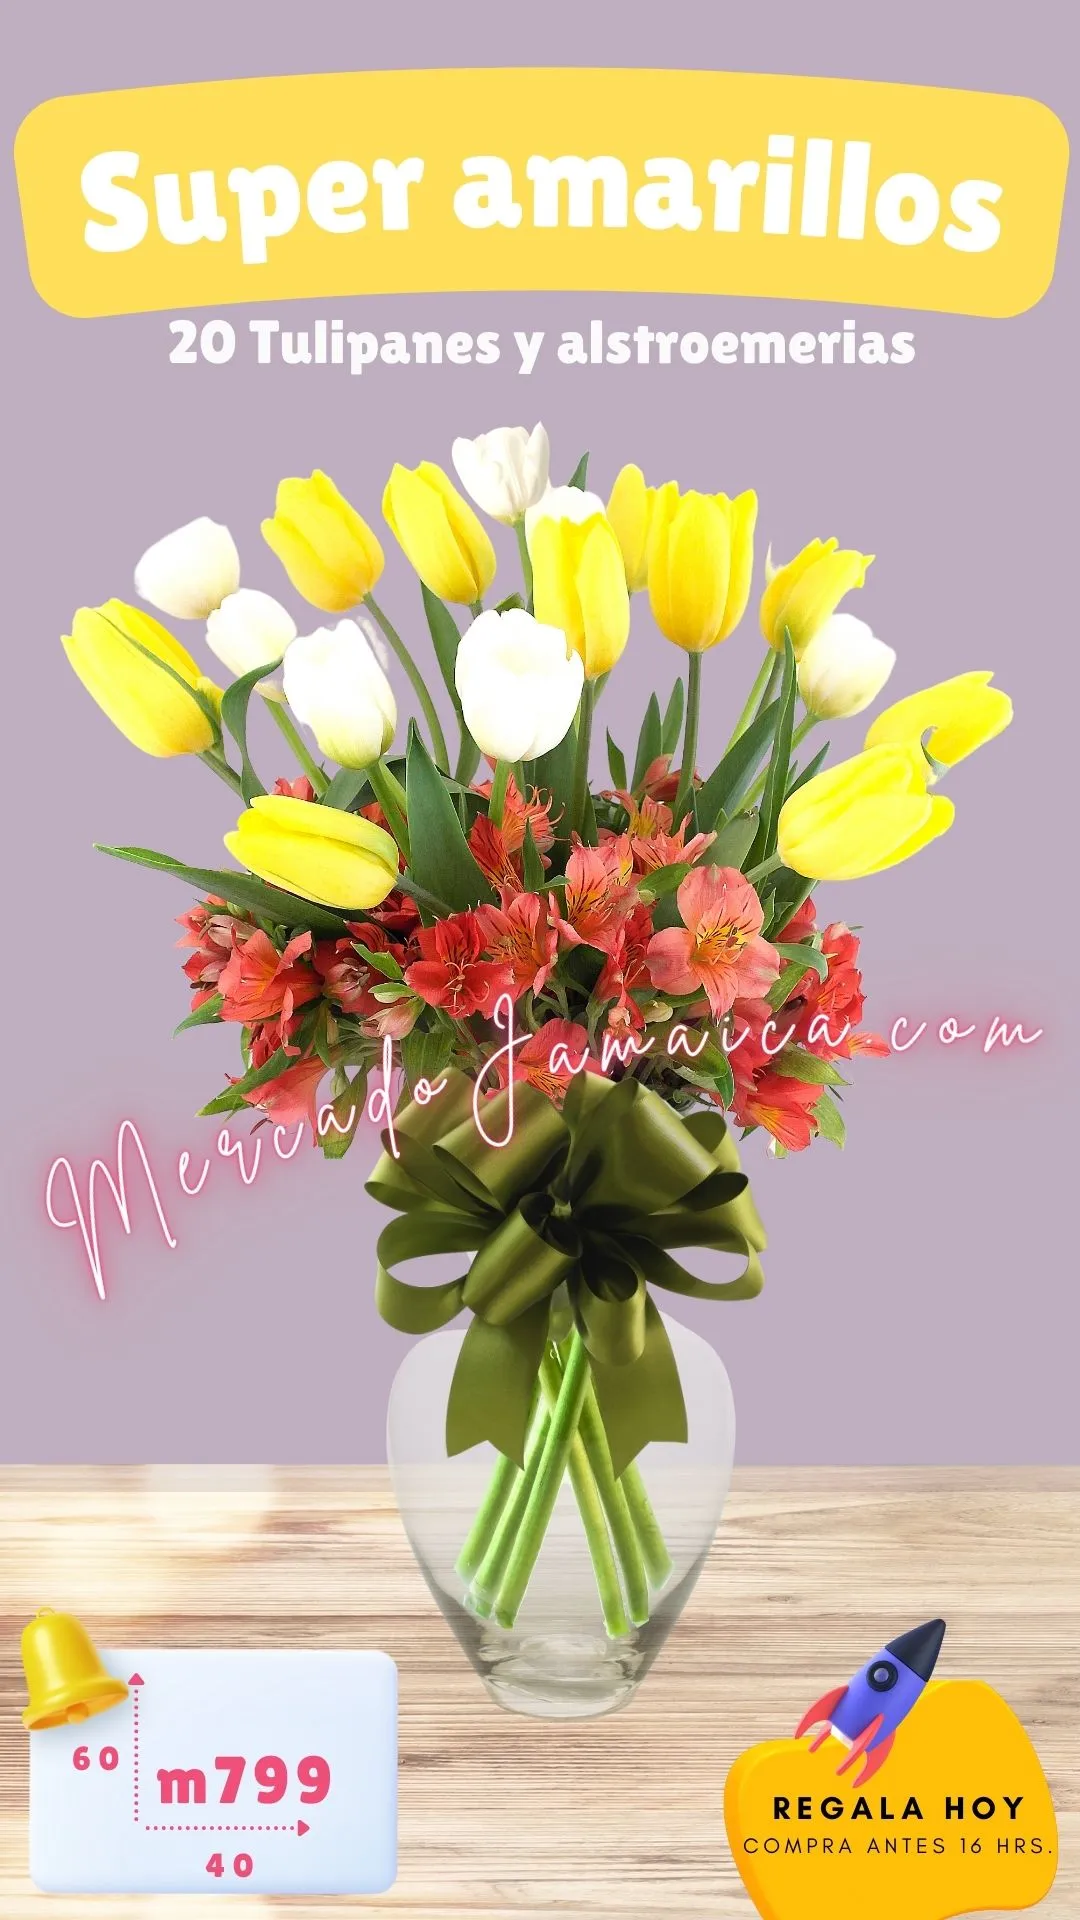 Florerias en reforma tulipanes super amarillos